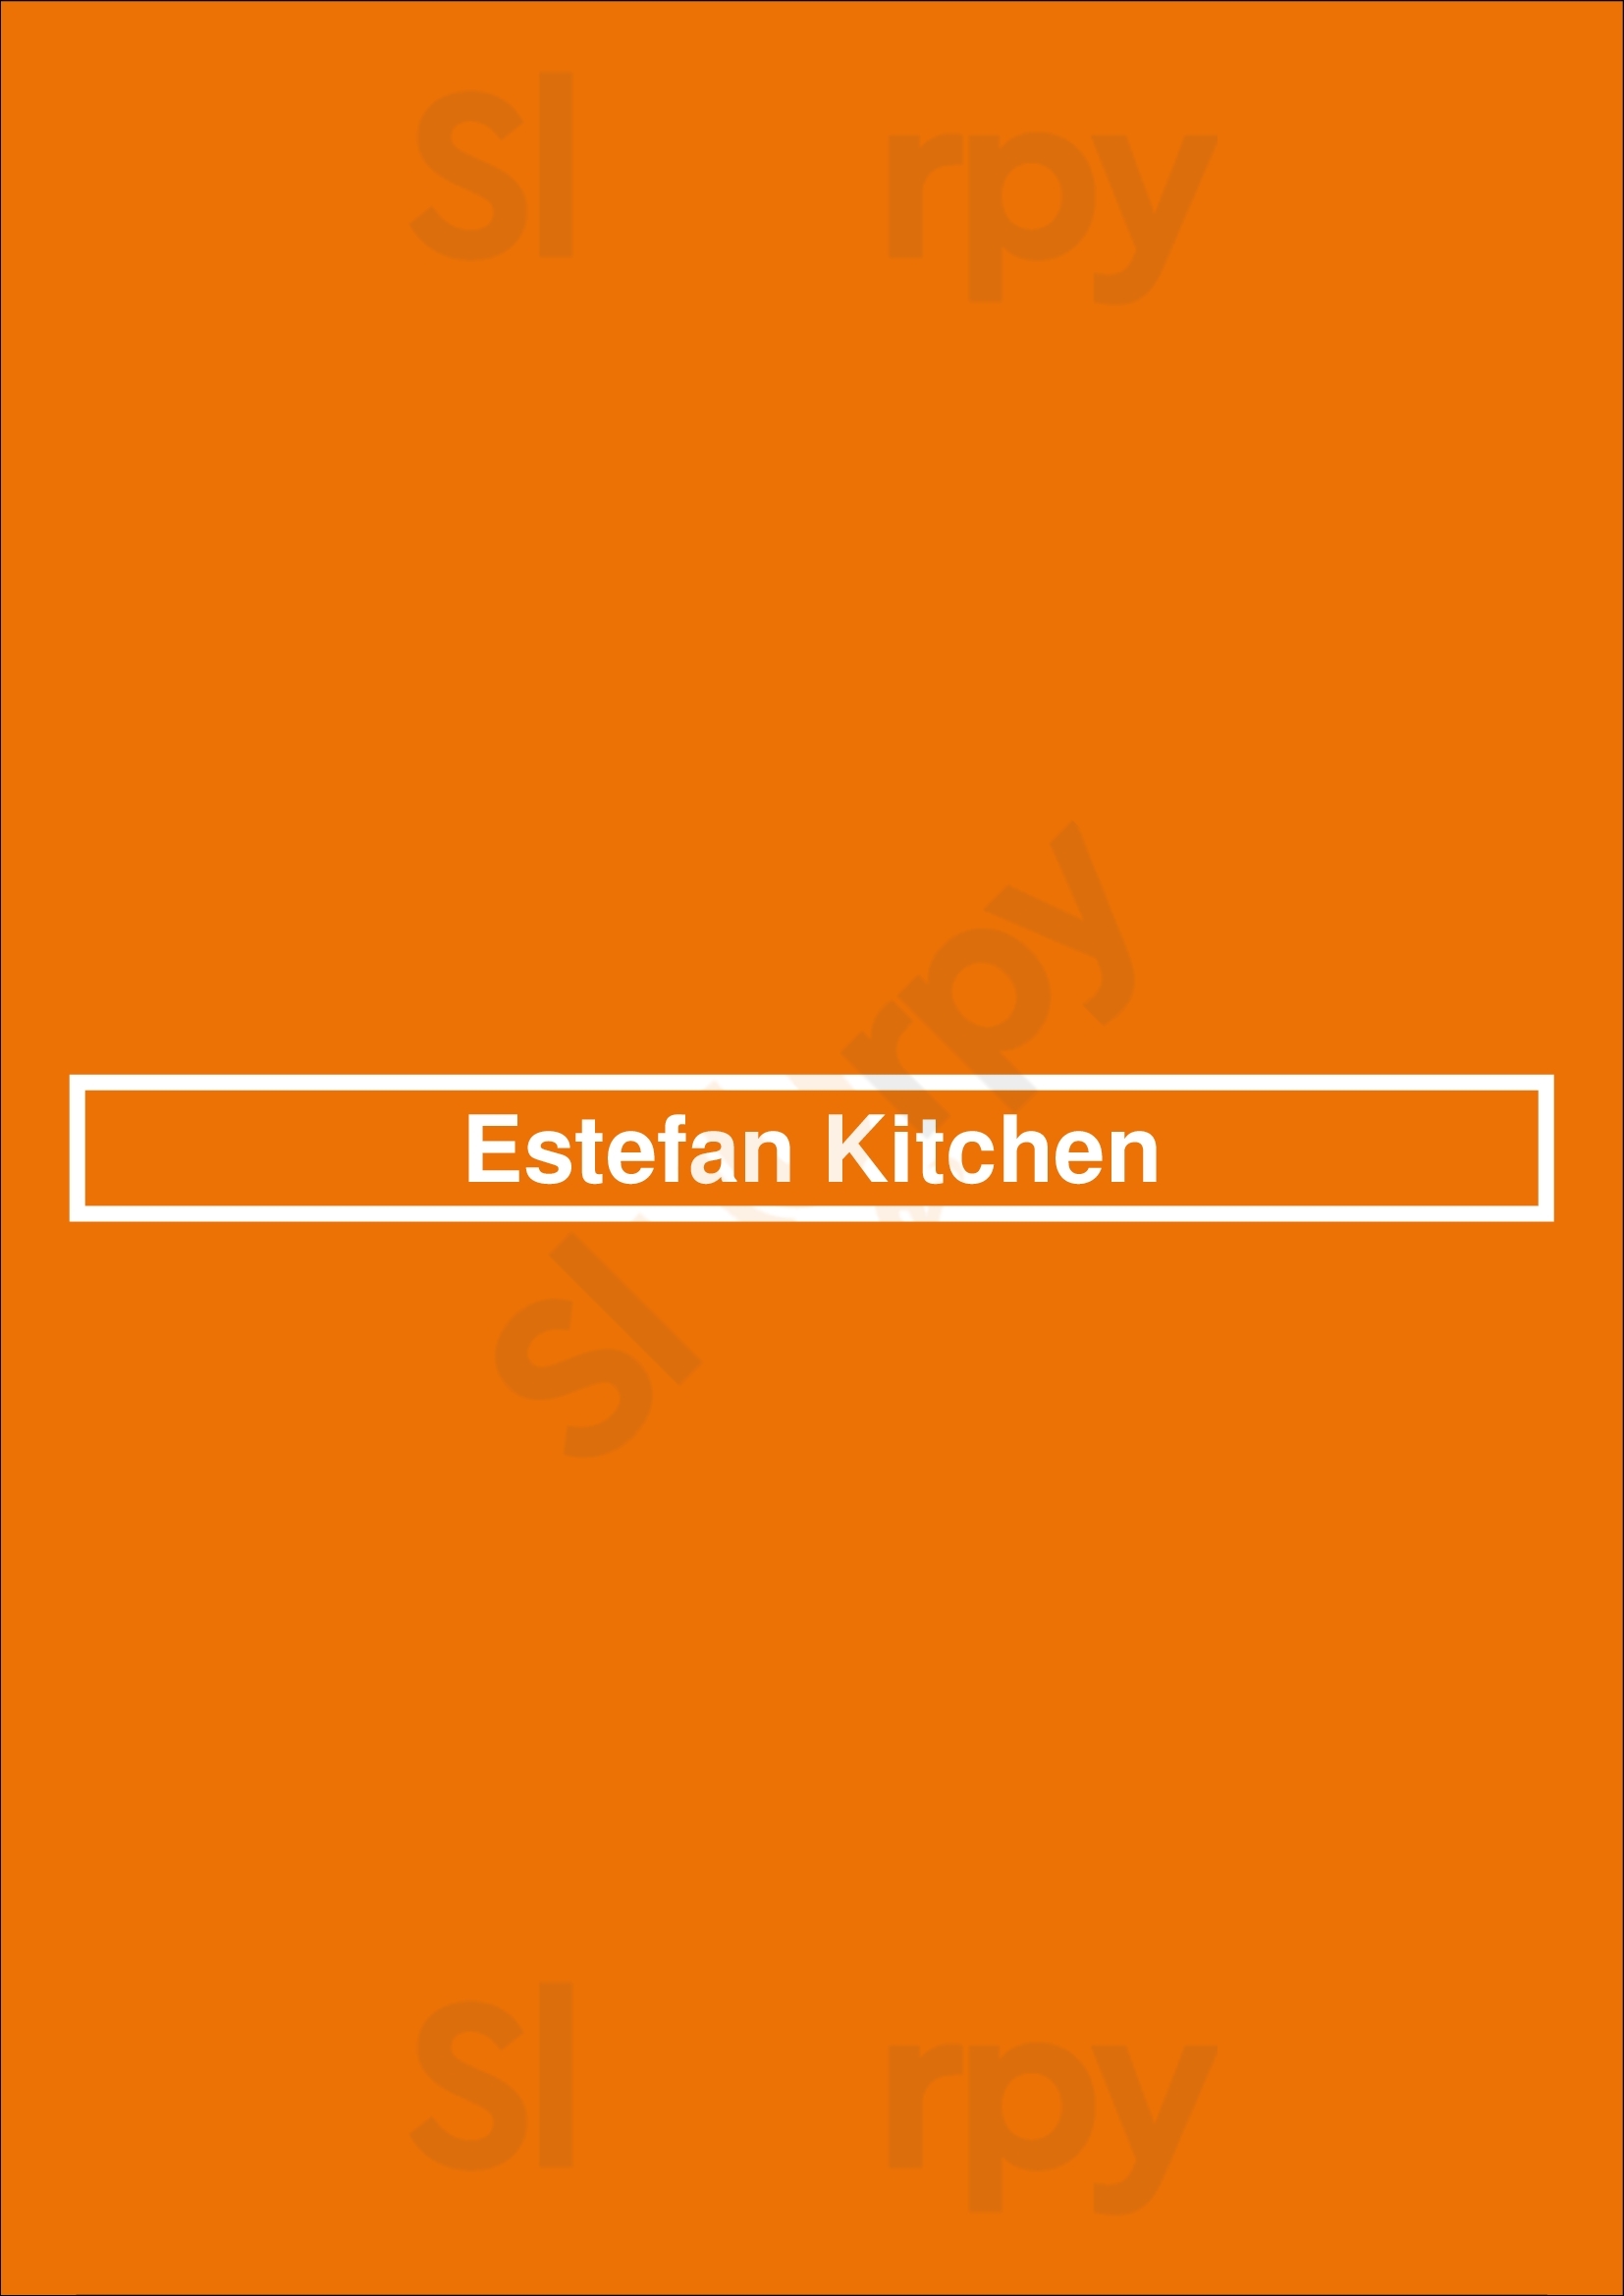 Estefan Kitchen Miami Menu - 1